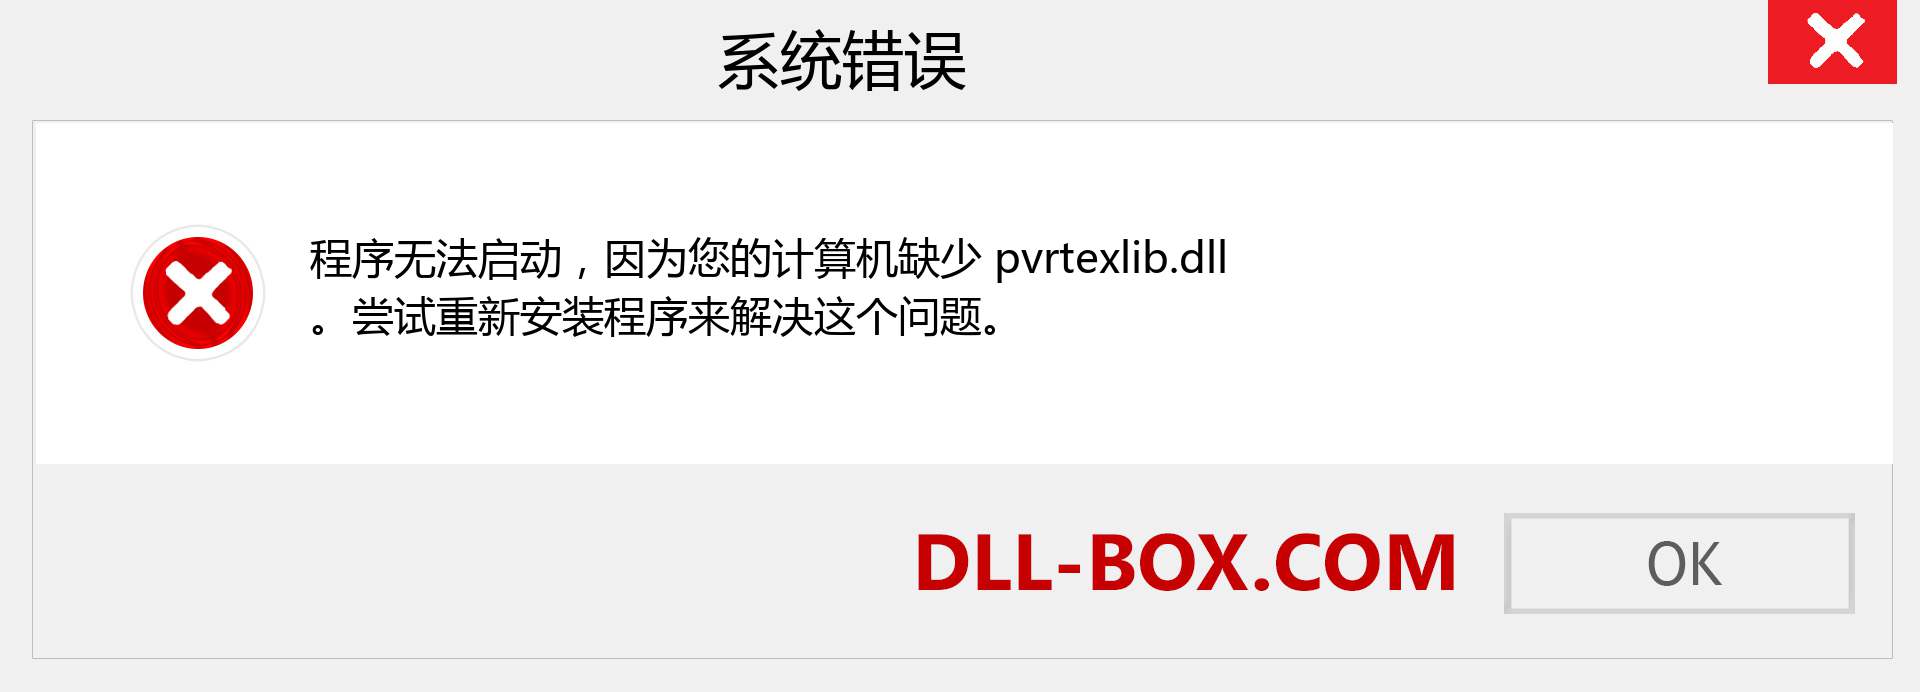 pvrtexlib.dll 文件丢失？。 适用于 Windows 7、8、10 的下载 - 修复 Windows、照片、图像上的 pvrtexlib dll 丢失错误